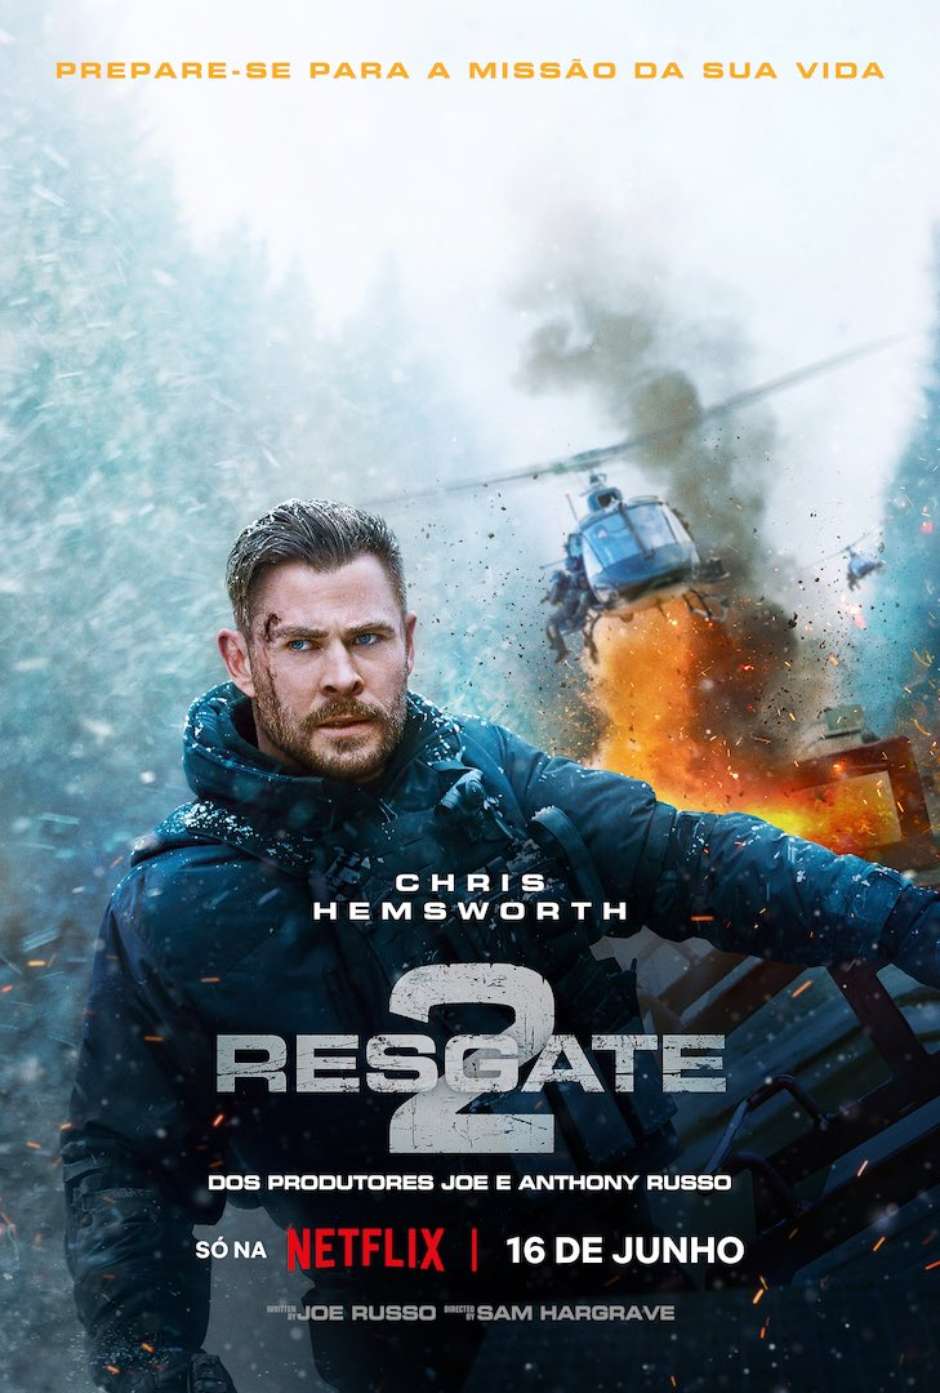 Chris Hemsworth salva mais crianças indefesas em Resgate 2